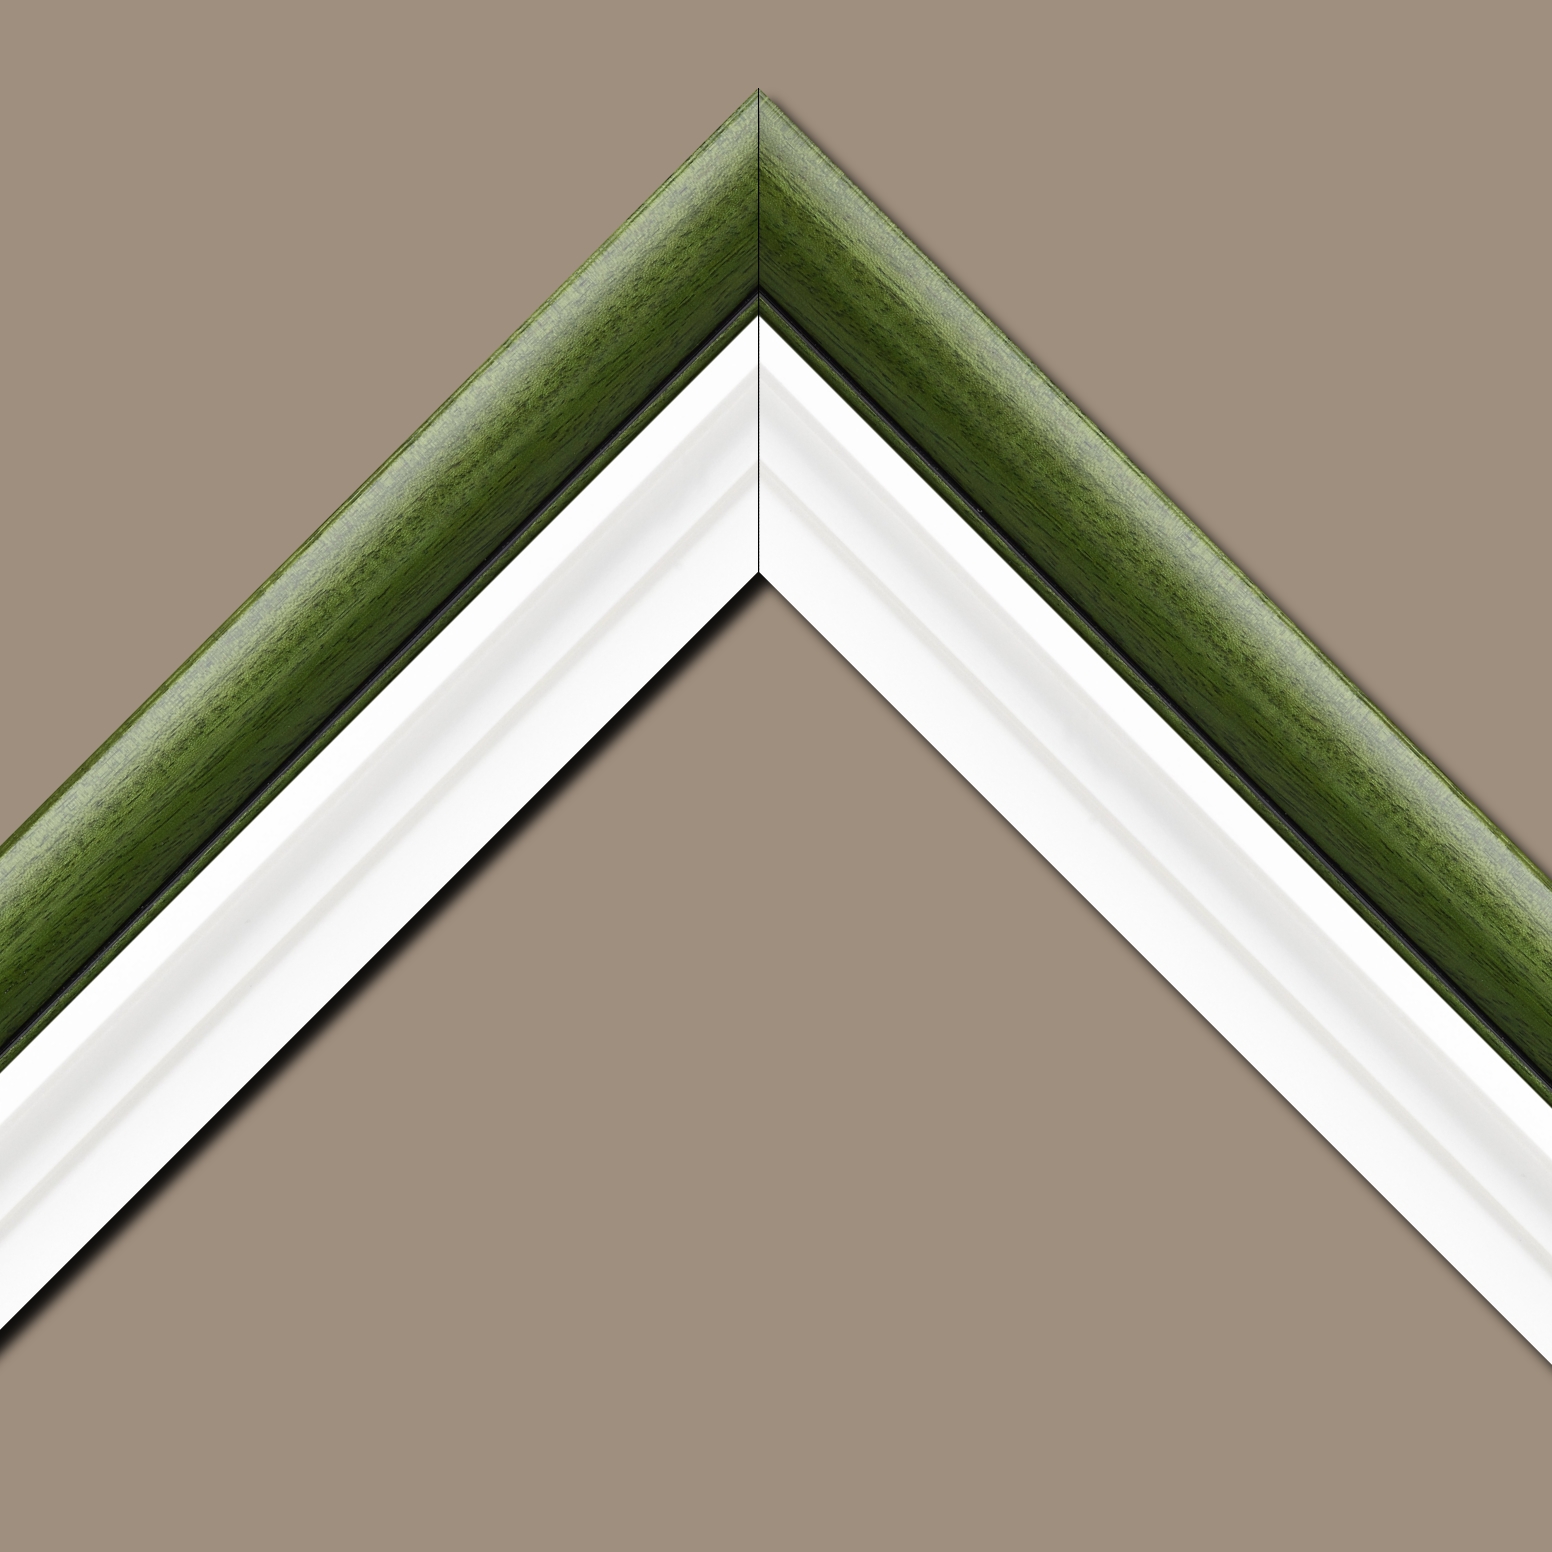 Baguette bois profil arrondi largeur 4.7cm couleur vert sapin satiné rehaussé d'un filet noir + bois caisse américaine profil escalier largeur 4.4cm blanc mat   (spécialement conçu pour les châssis d'une épaisseur jusqu’à 2.5cm ) largeur total du cadre : 8.3cm